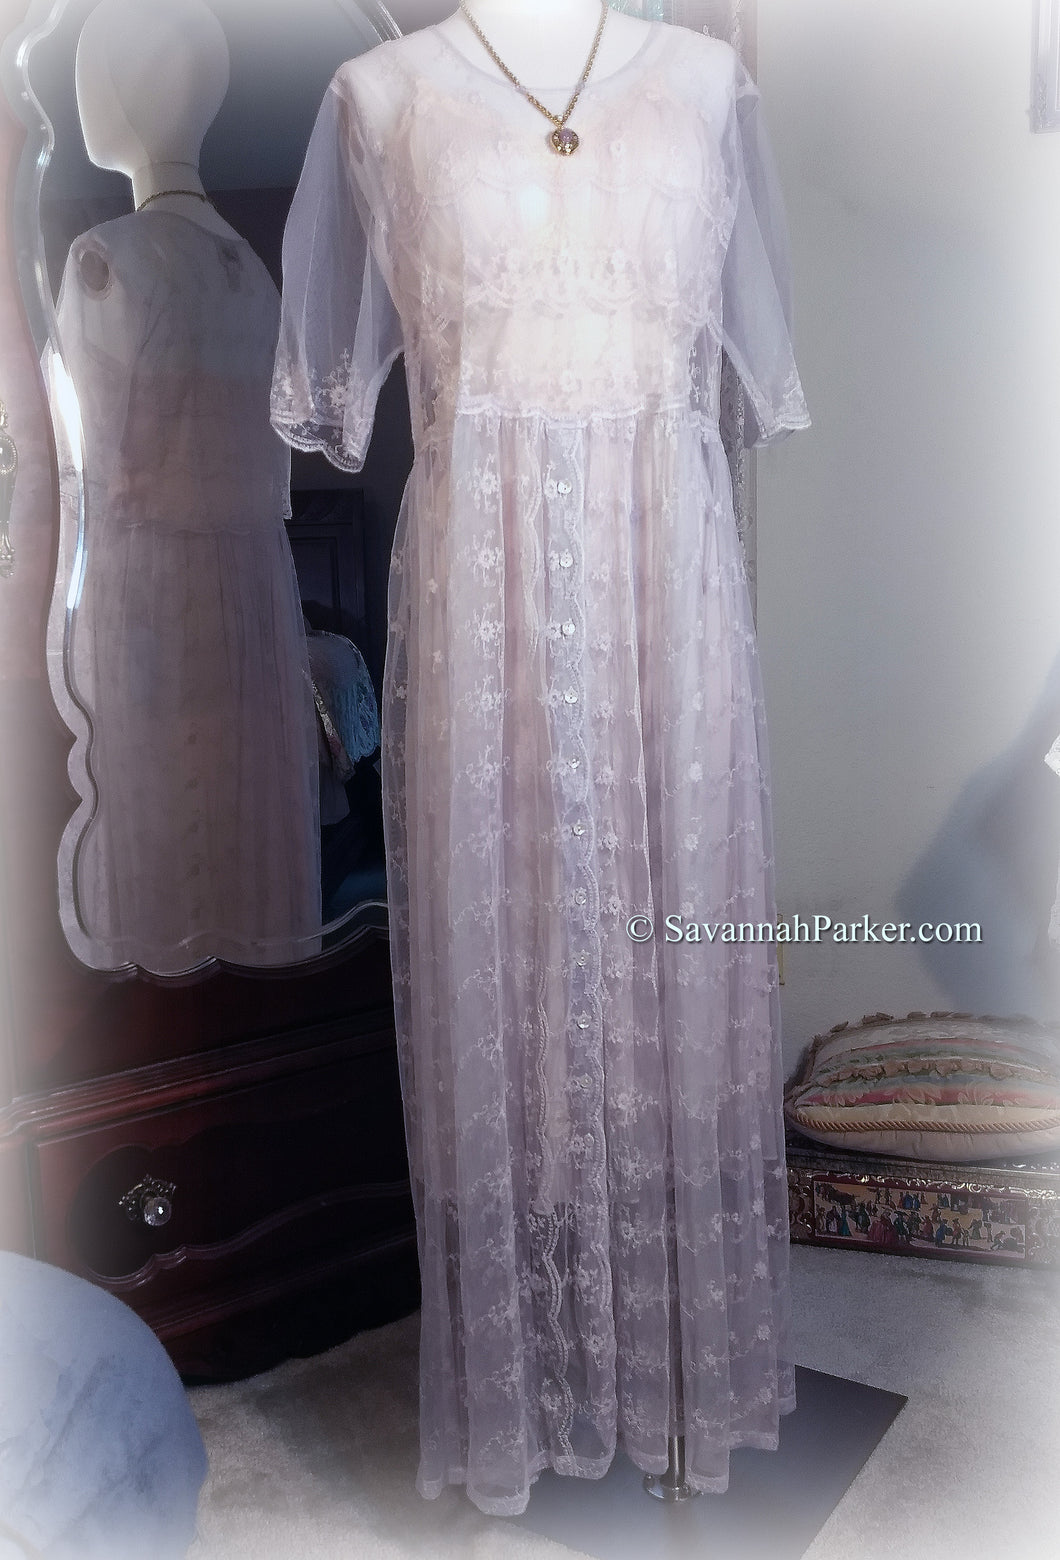 SOLD Exquisite Vintage April Cornell - Lavender Lace Tea Dress - Summer Wedding - Garden Party 20s style Dress - Vintage Antique Style